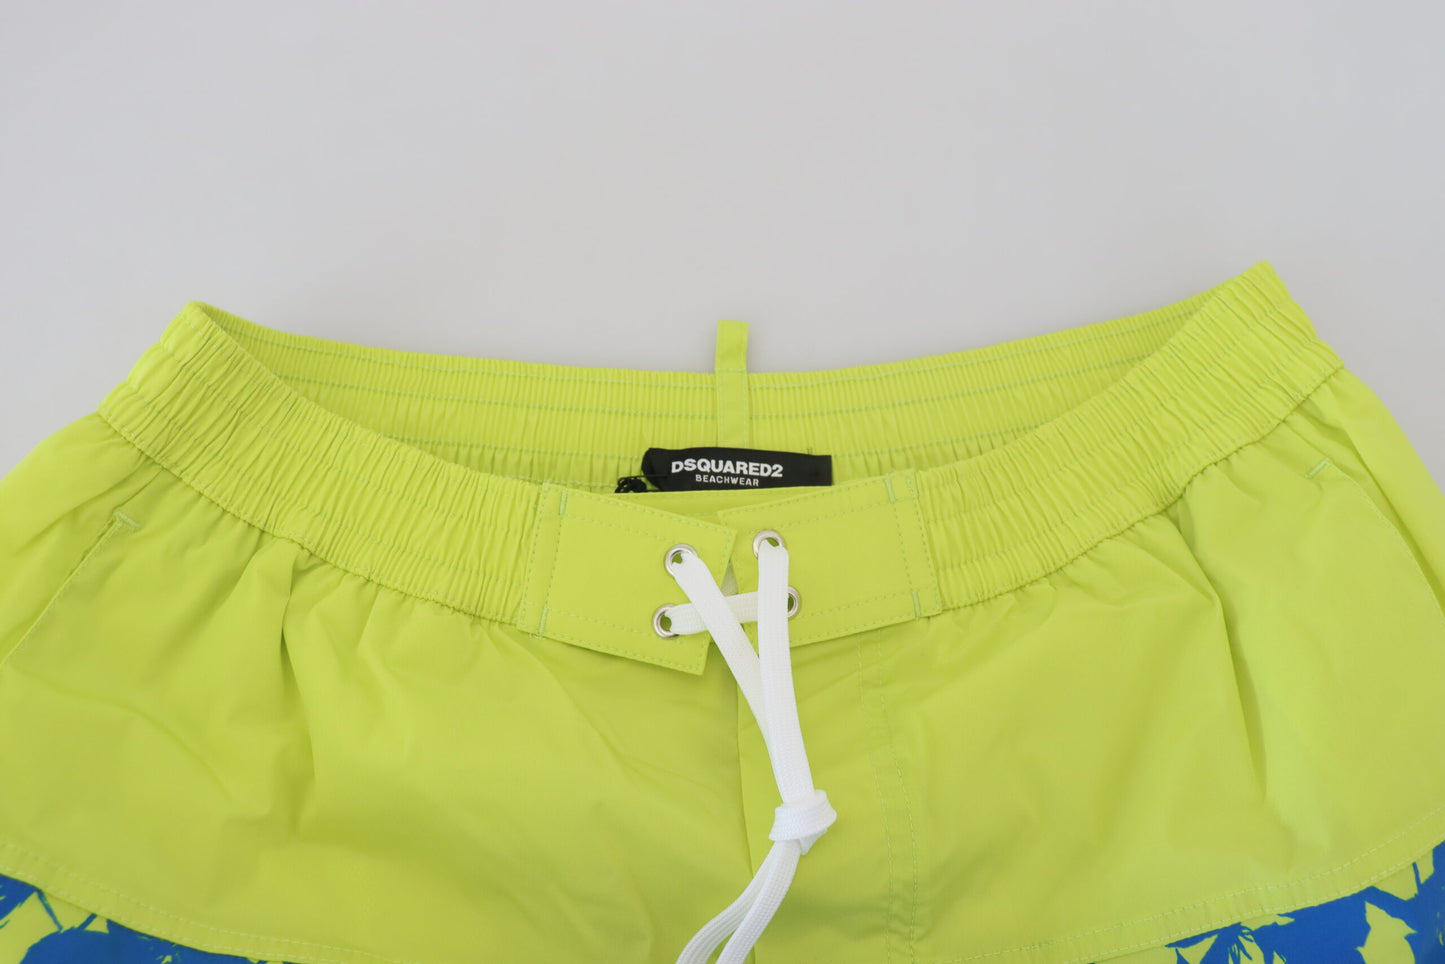 Dsquared ² blu verde stampa stampa uomo shorts shorts costume da bagno